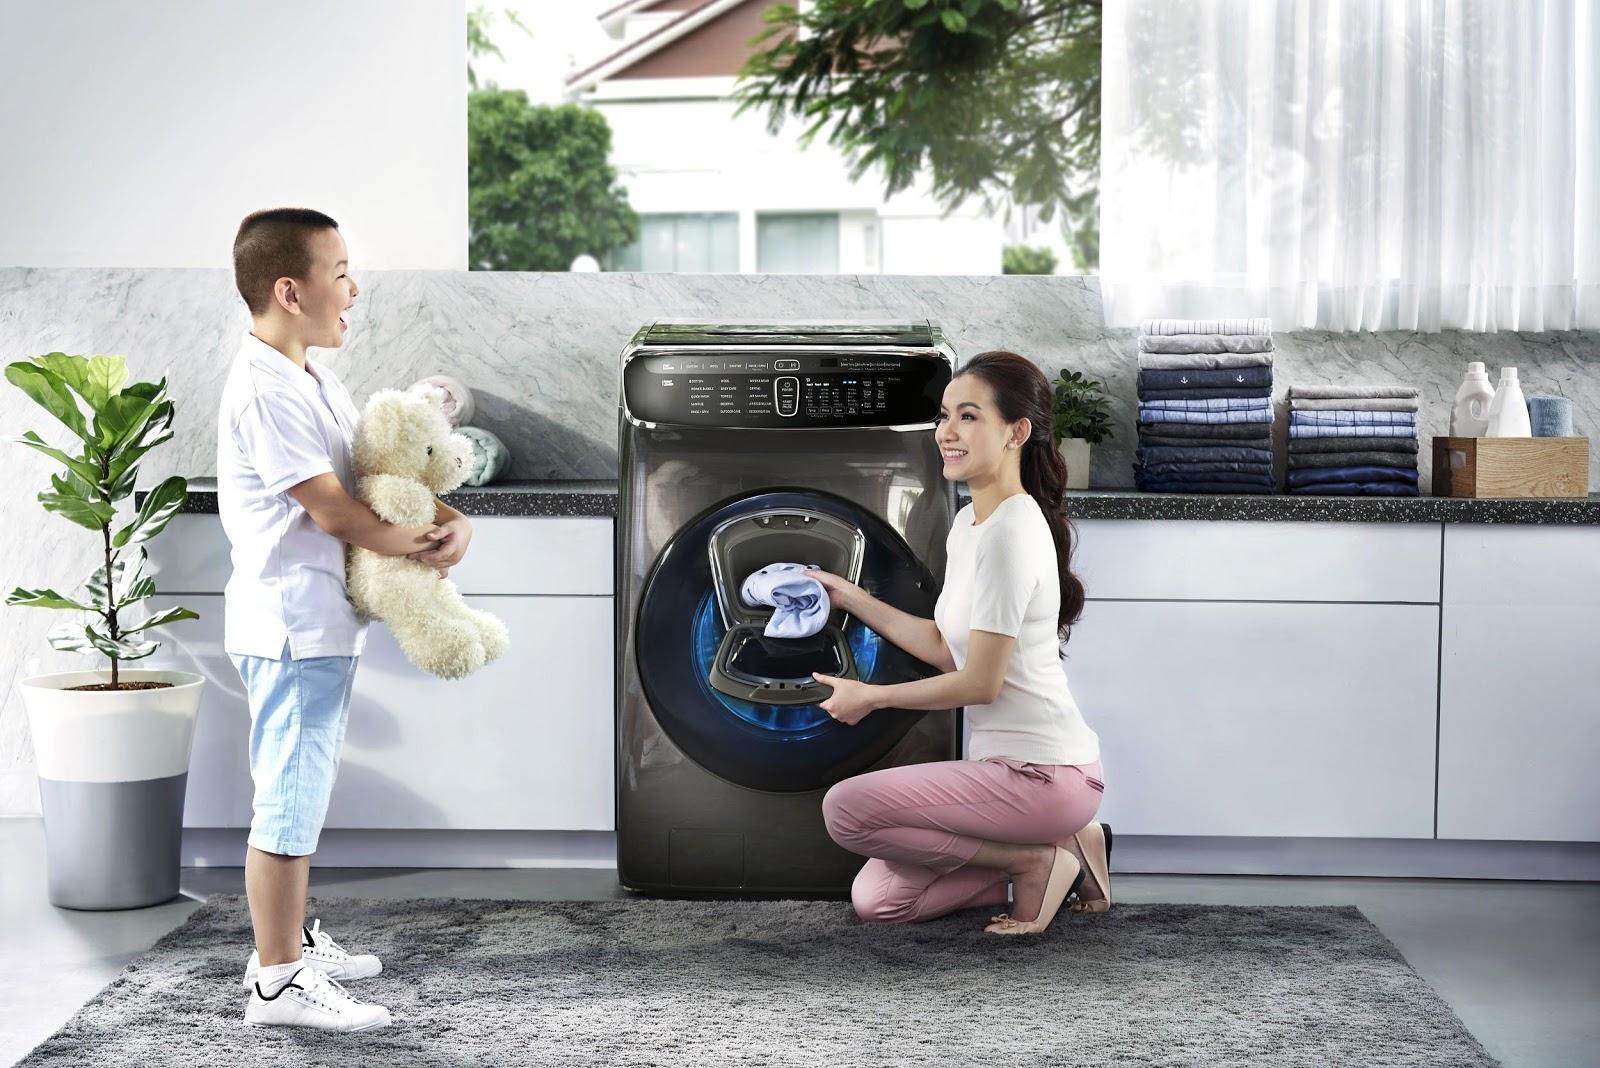 Máy giặt Samsung Flexwash cũng cho hiệu suất giặt sấy tốt nhất